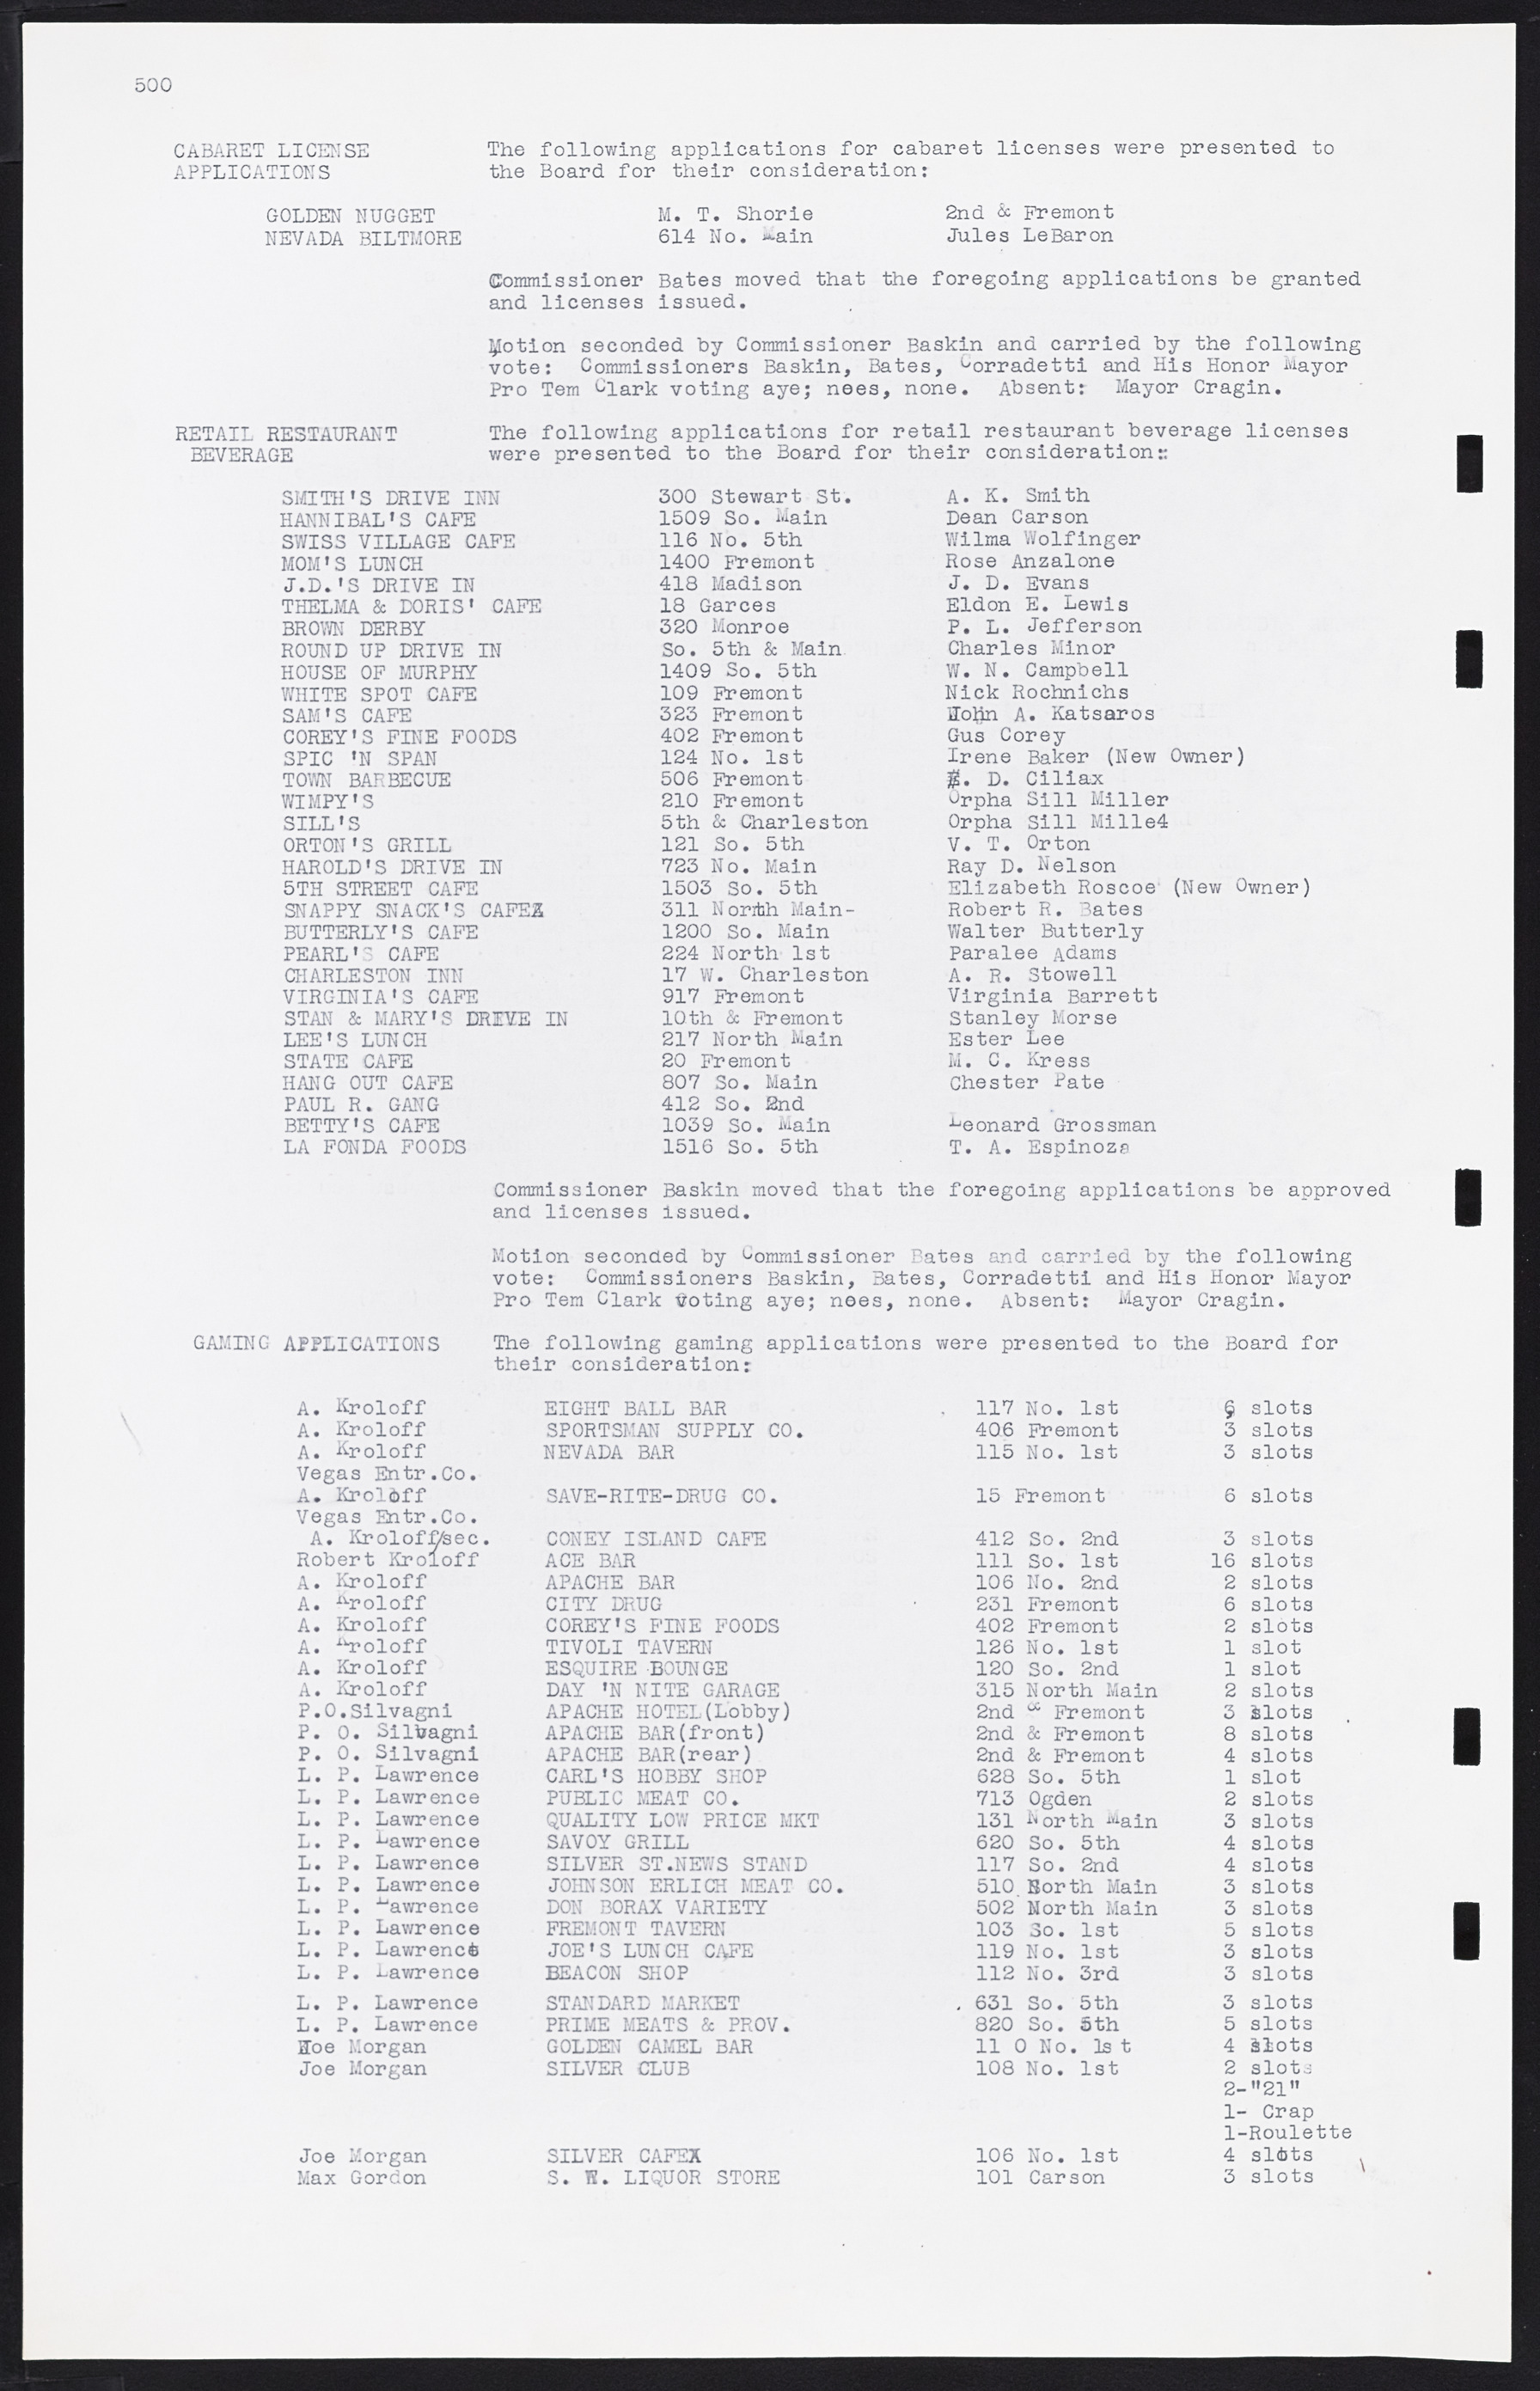 Las Vegas City Commission Minutes, August 11, 1942 to December 30, 1946, lvc000005-531